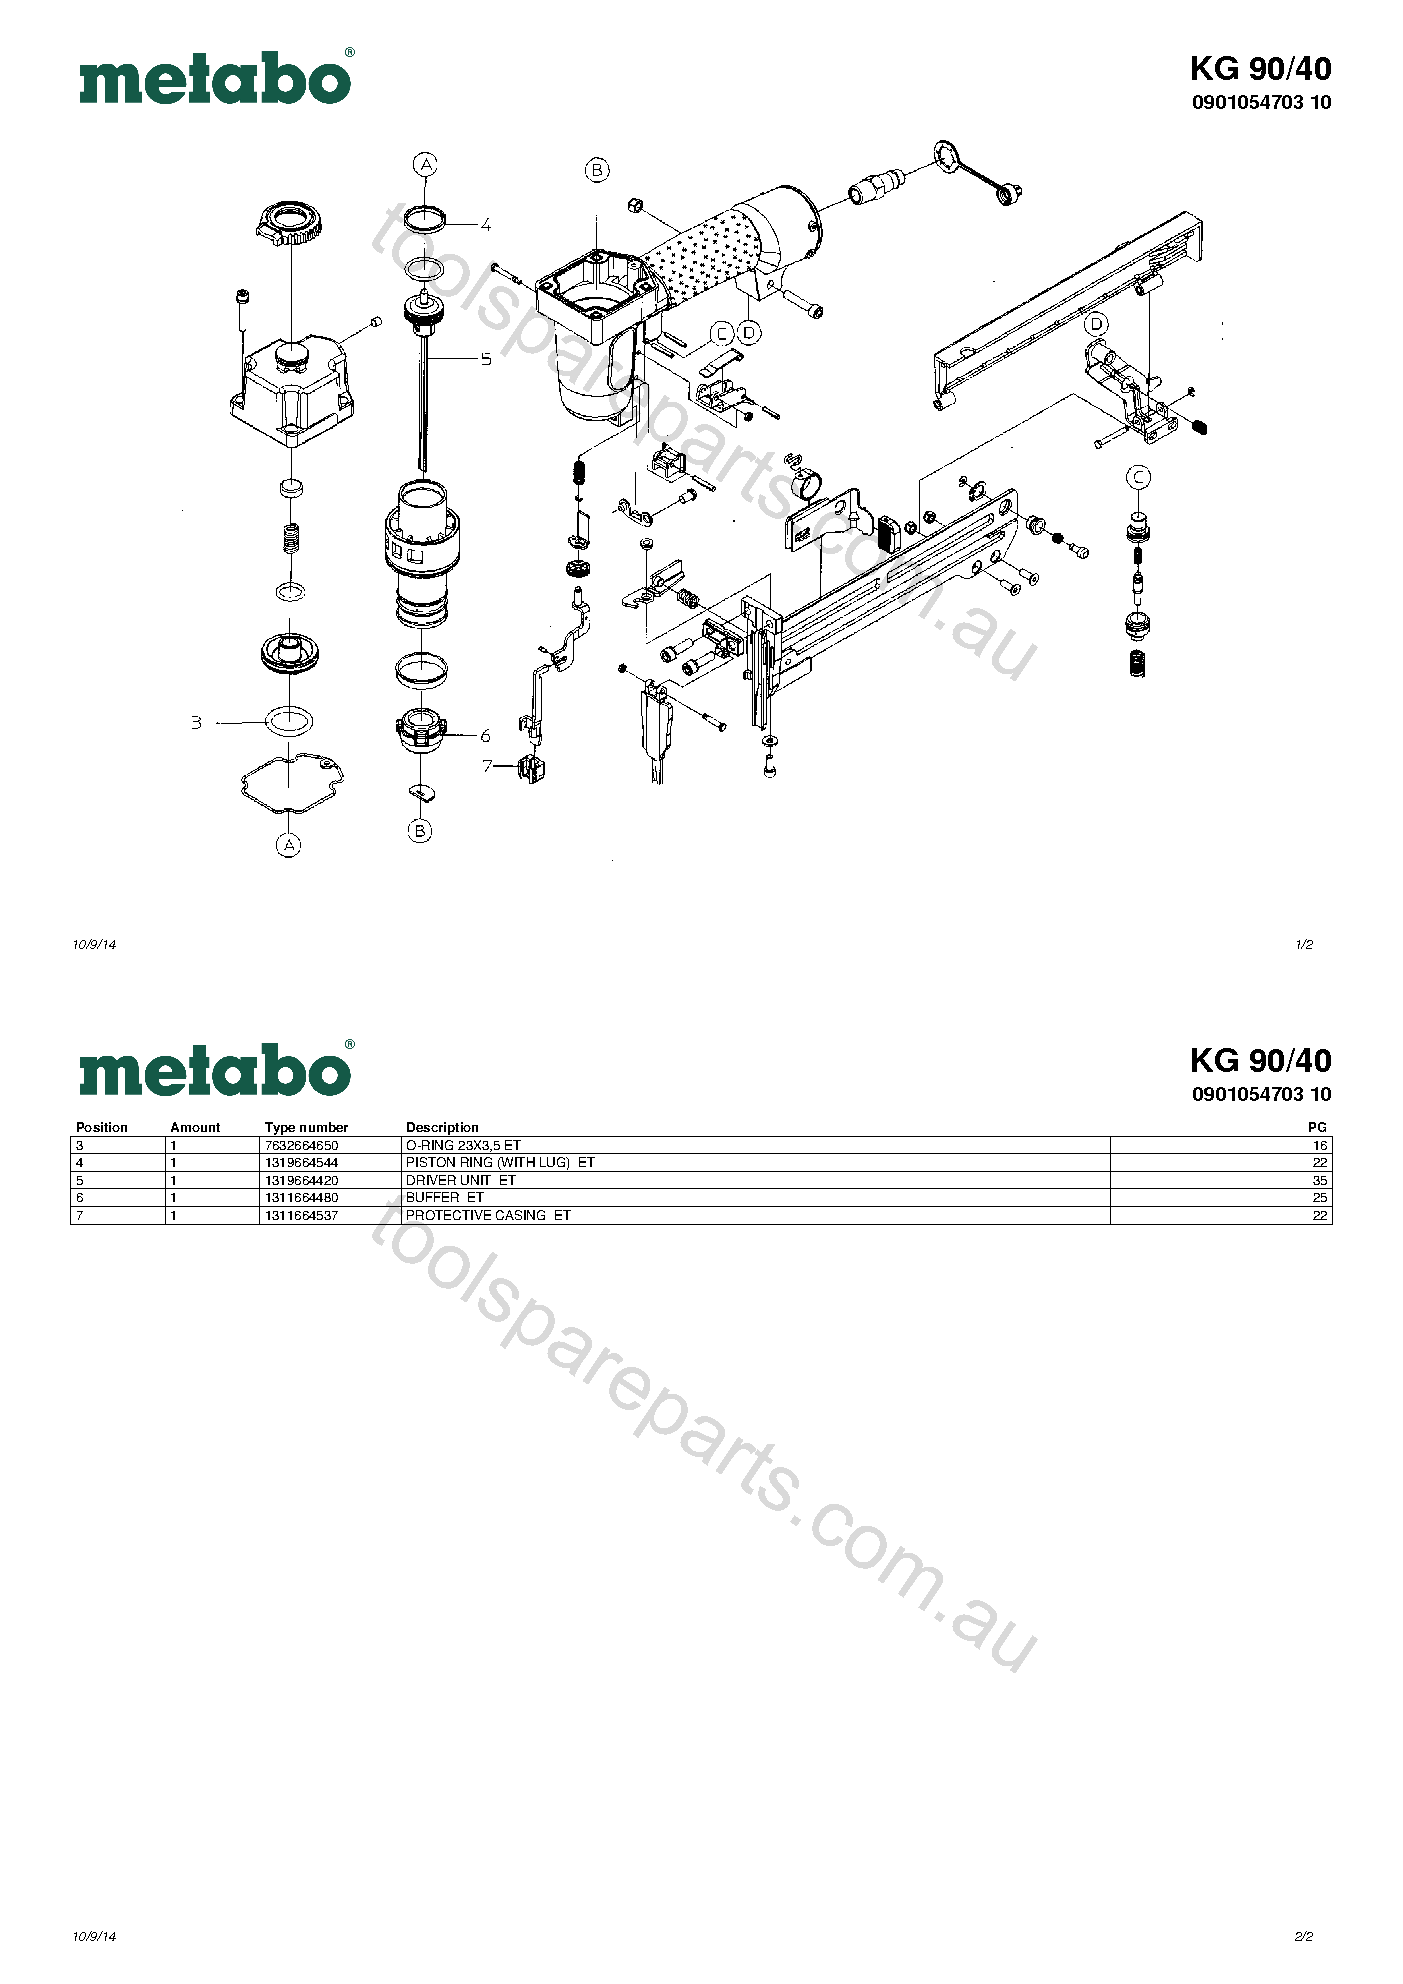 Metabo KG 90/40 0901054703 10  Diagram 1